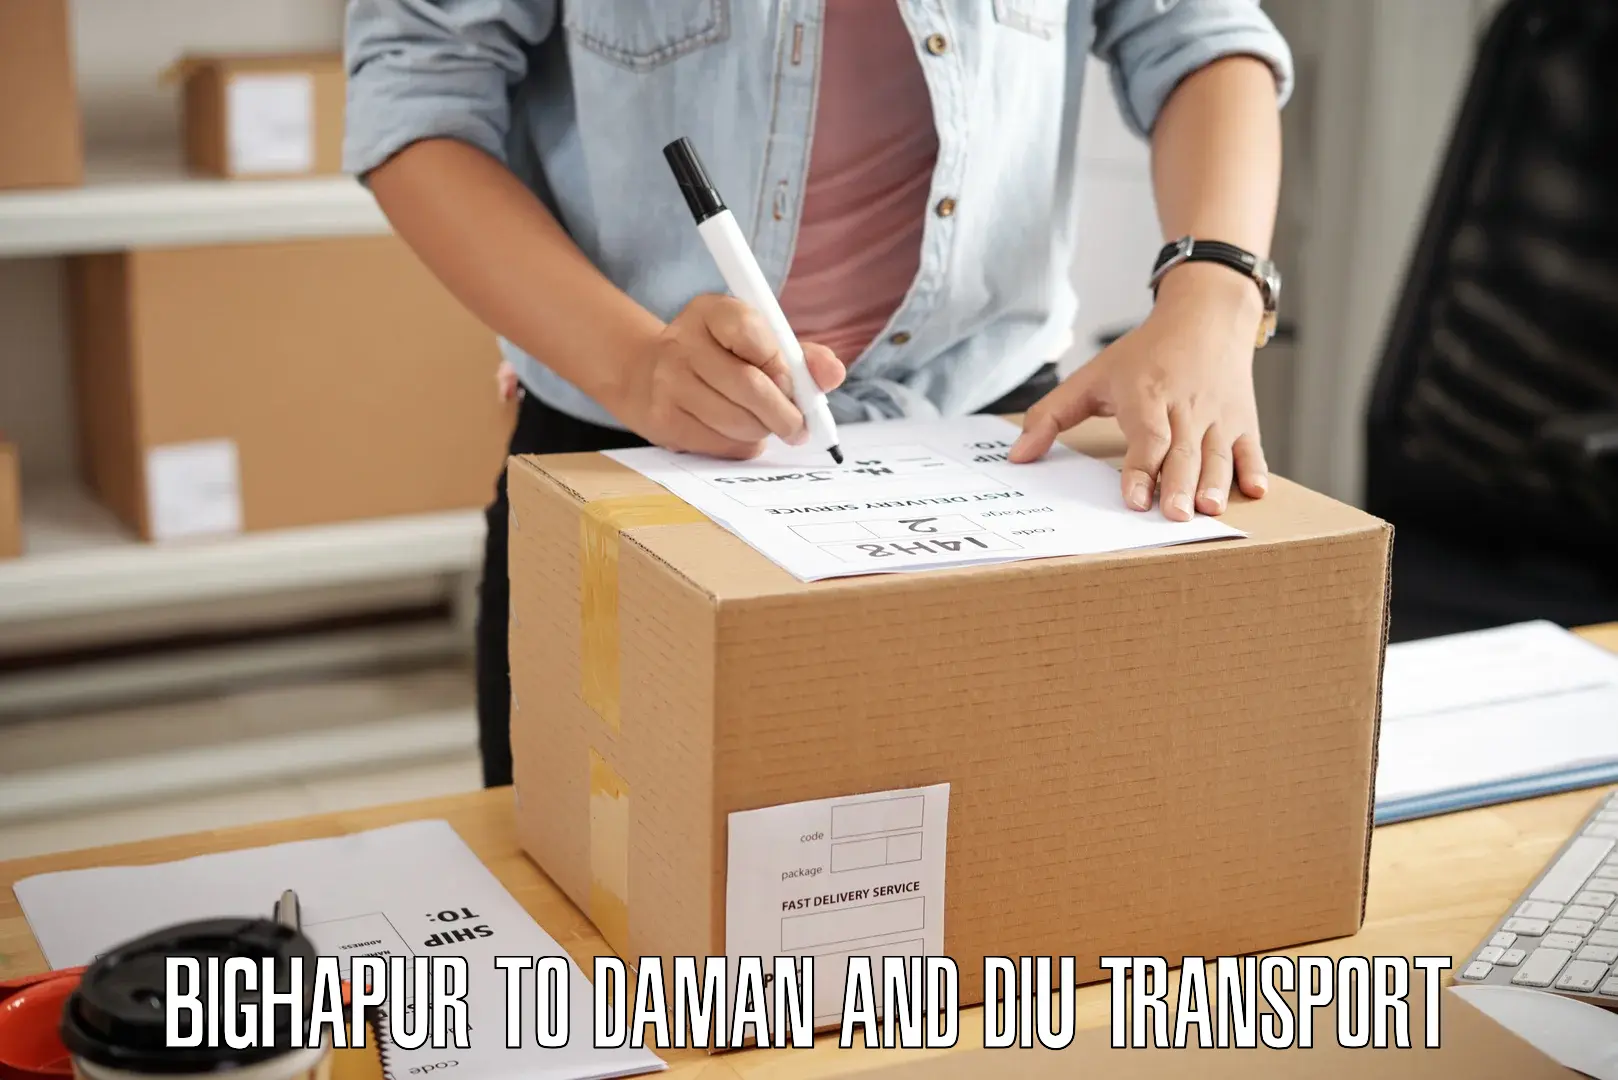 Logistics transportation services Bighapur to Daman and Diu